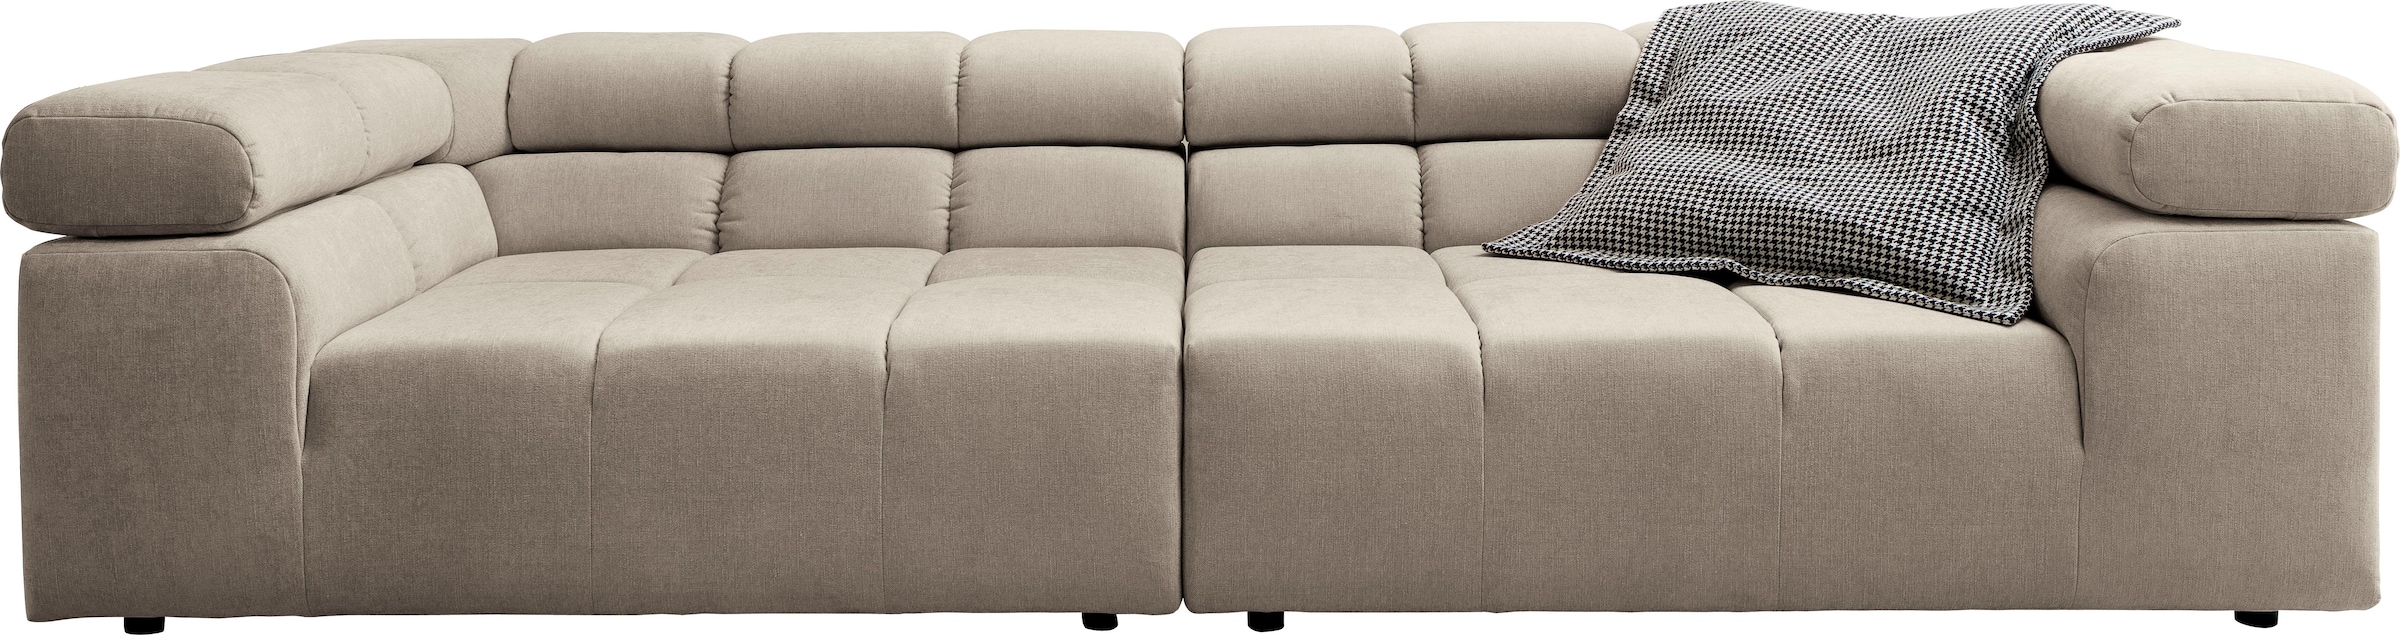 INOSIGN Big-Sofa »Ancona B/T/H: 290/110/70 cm«, auffällige Steppung, inkl. 2 Zierkissen und verstellbaren Kopfstützen